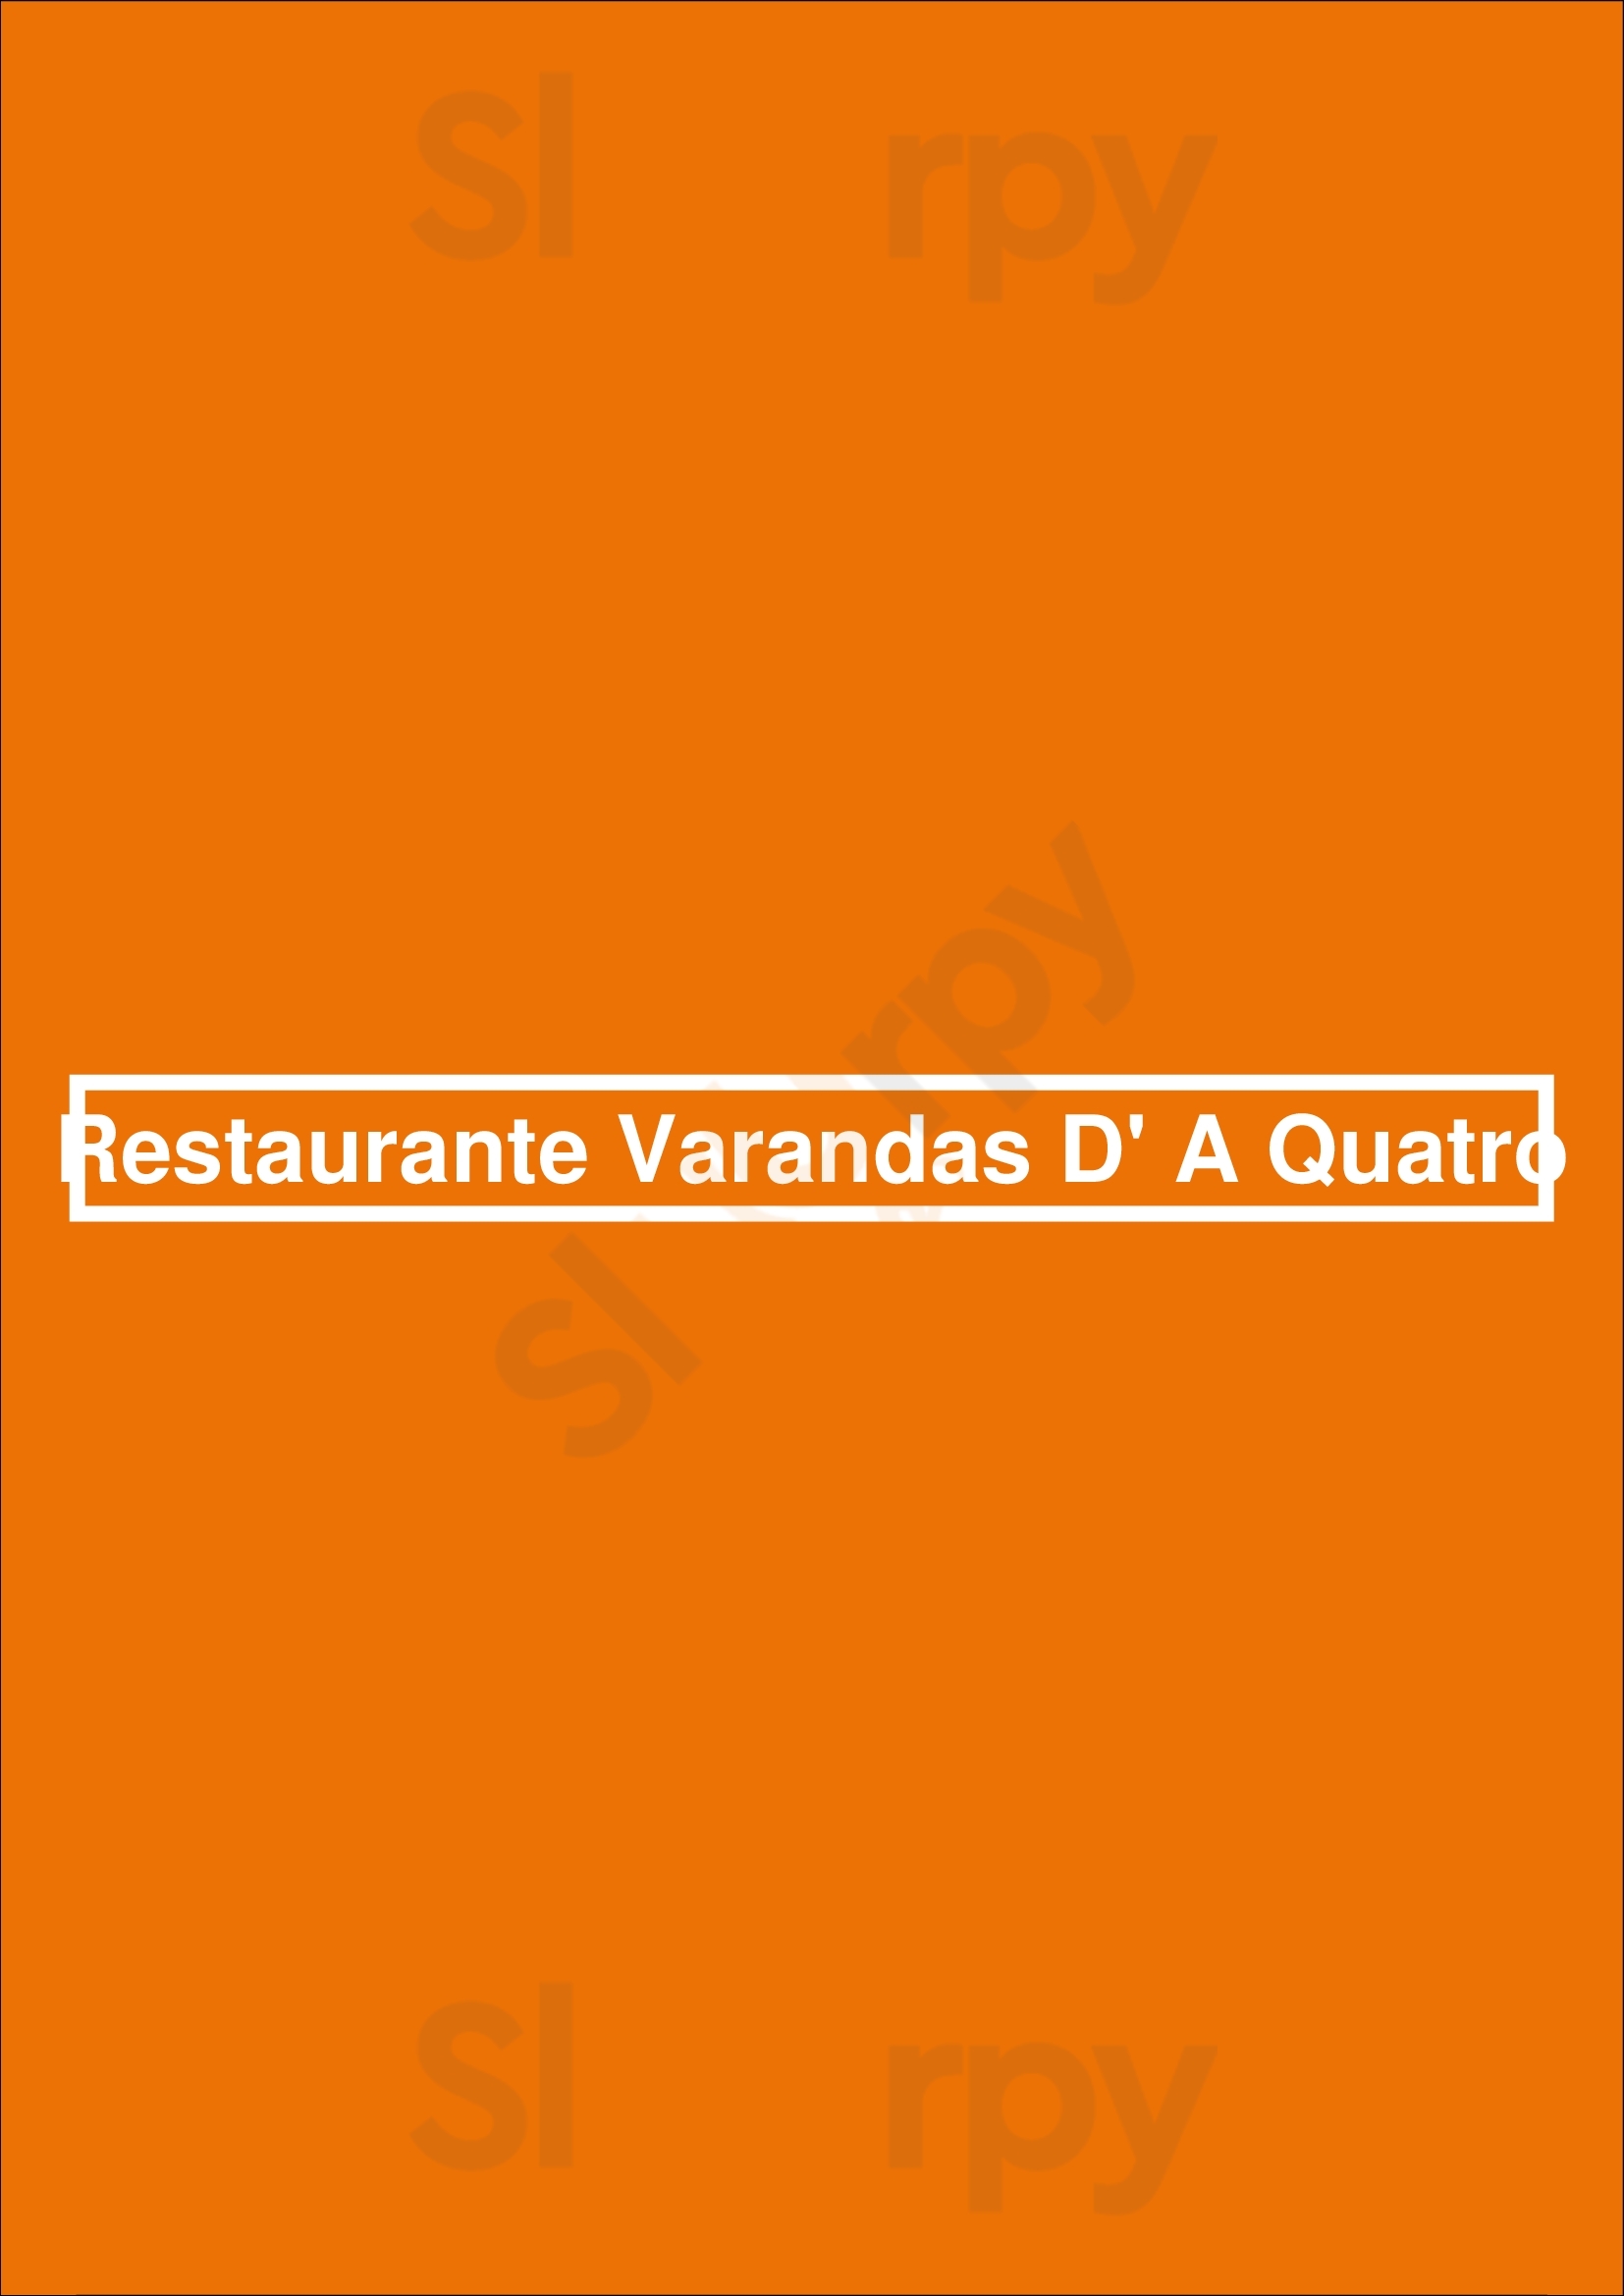 Restaurante Varandas D' A Quatro Paredes Menu - 1